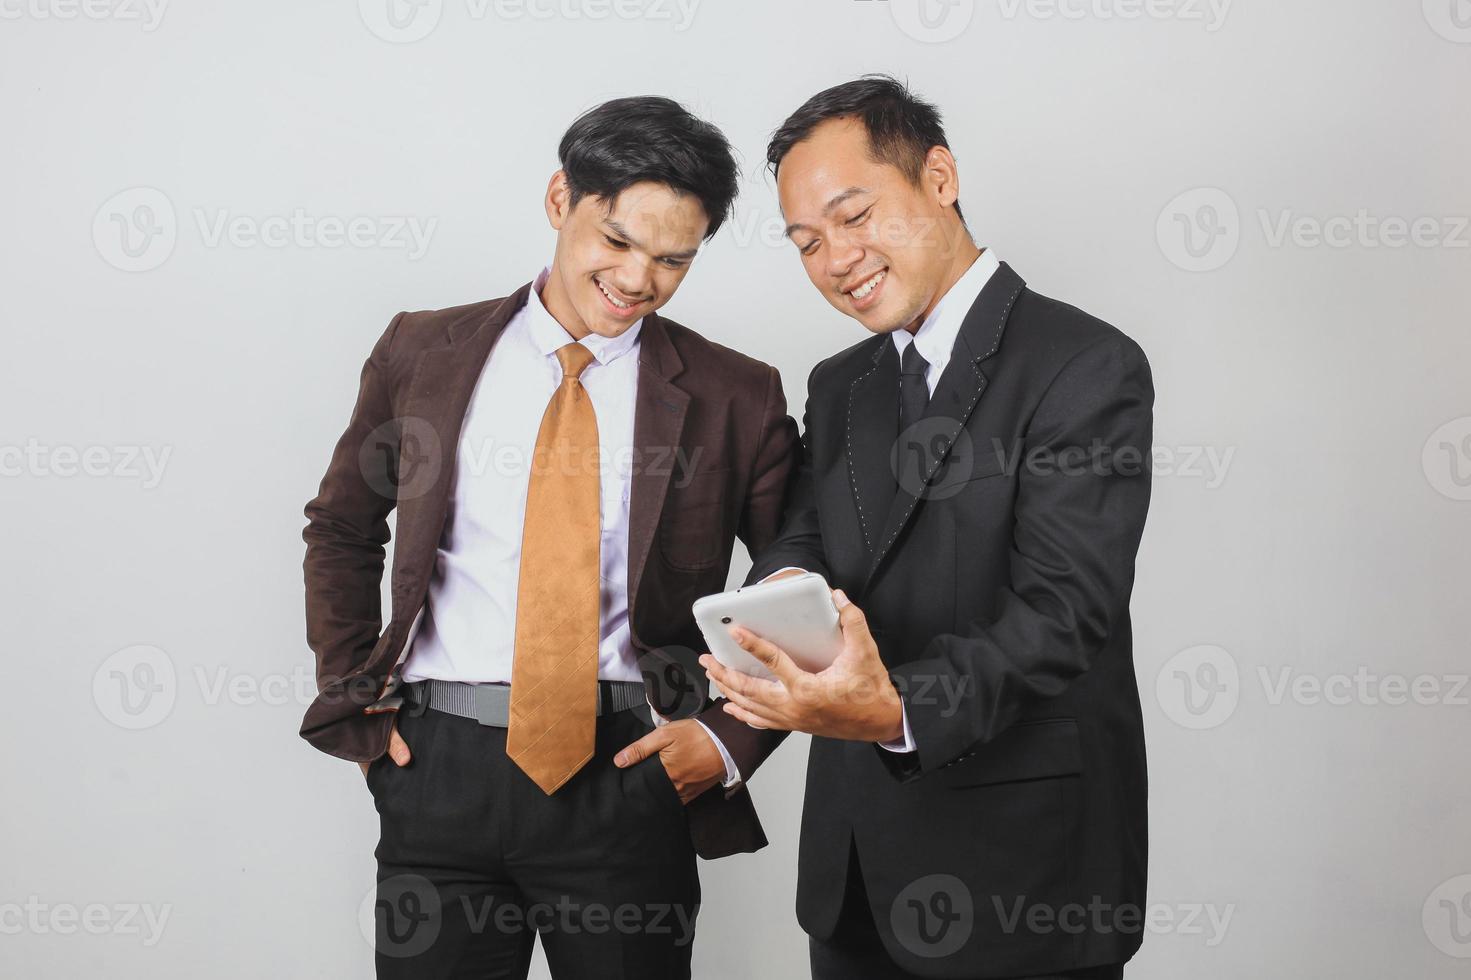 deux hommes d'affaires asiatiques en costume discutant à l'aide d'un téléphone intelligent photo